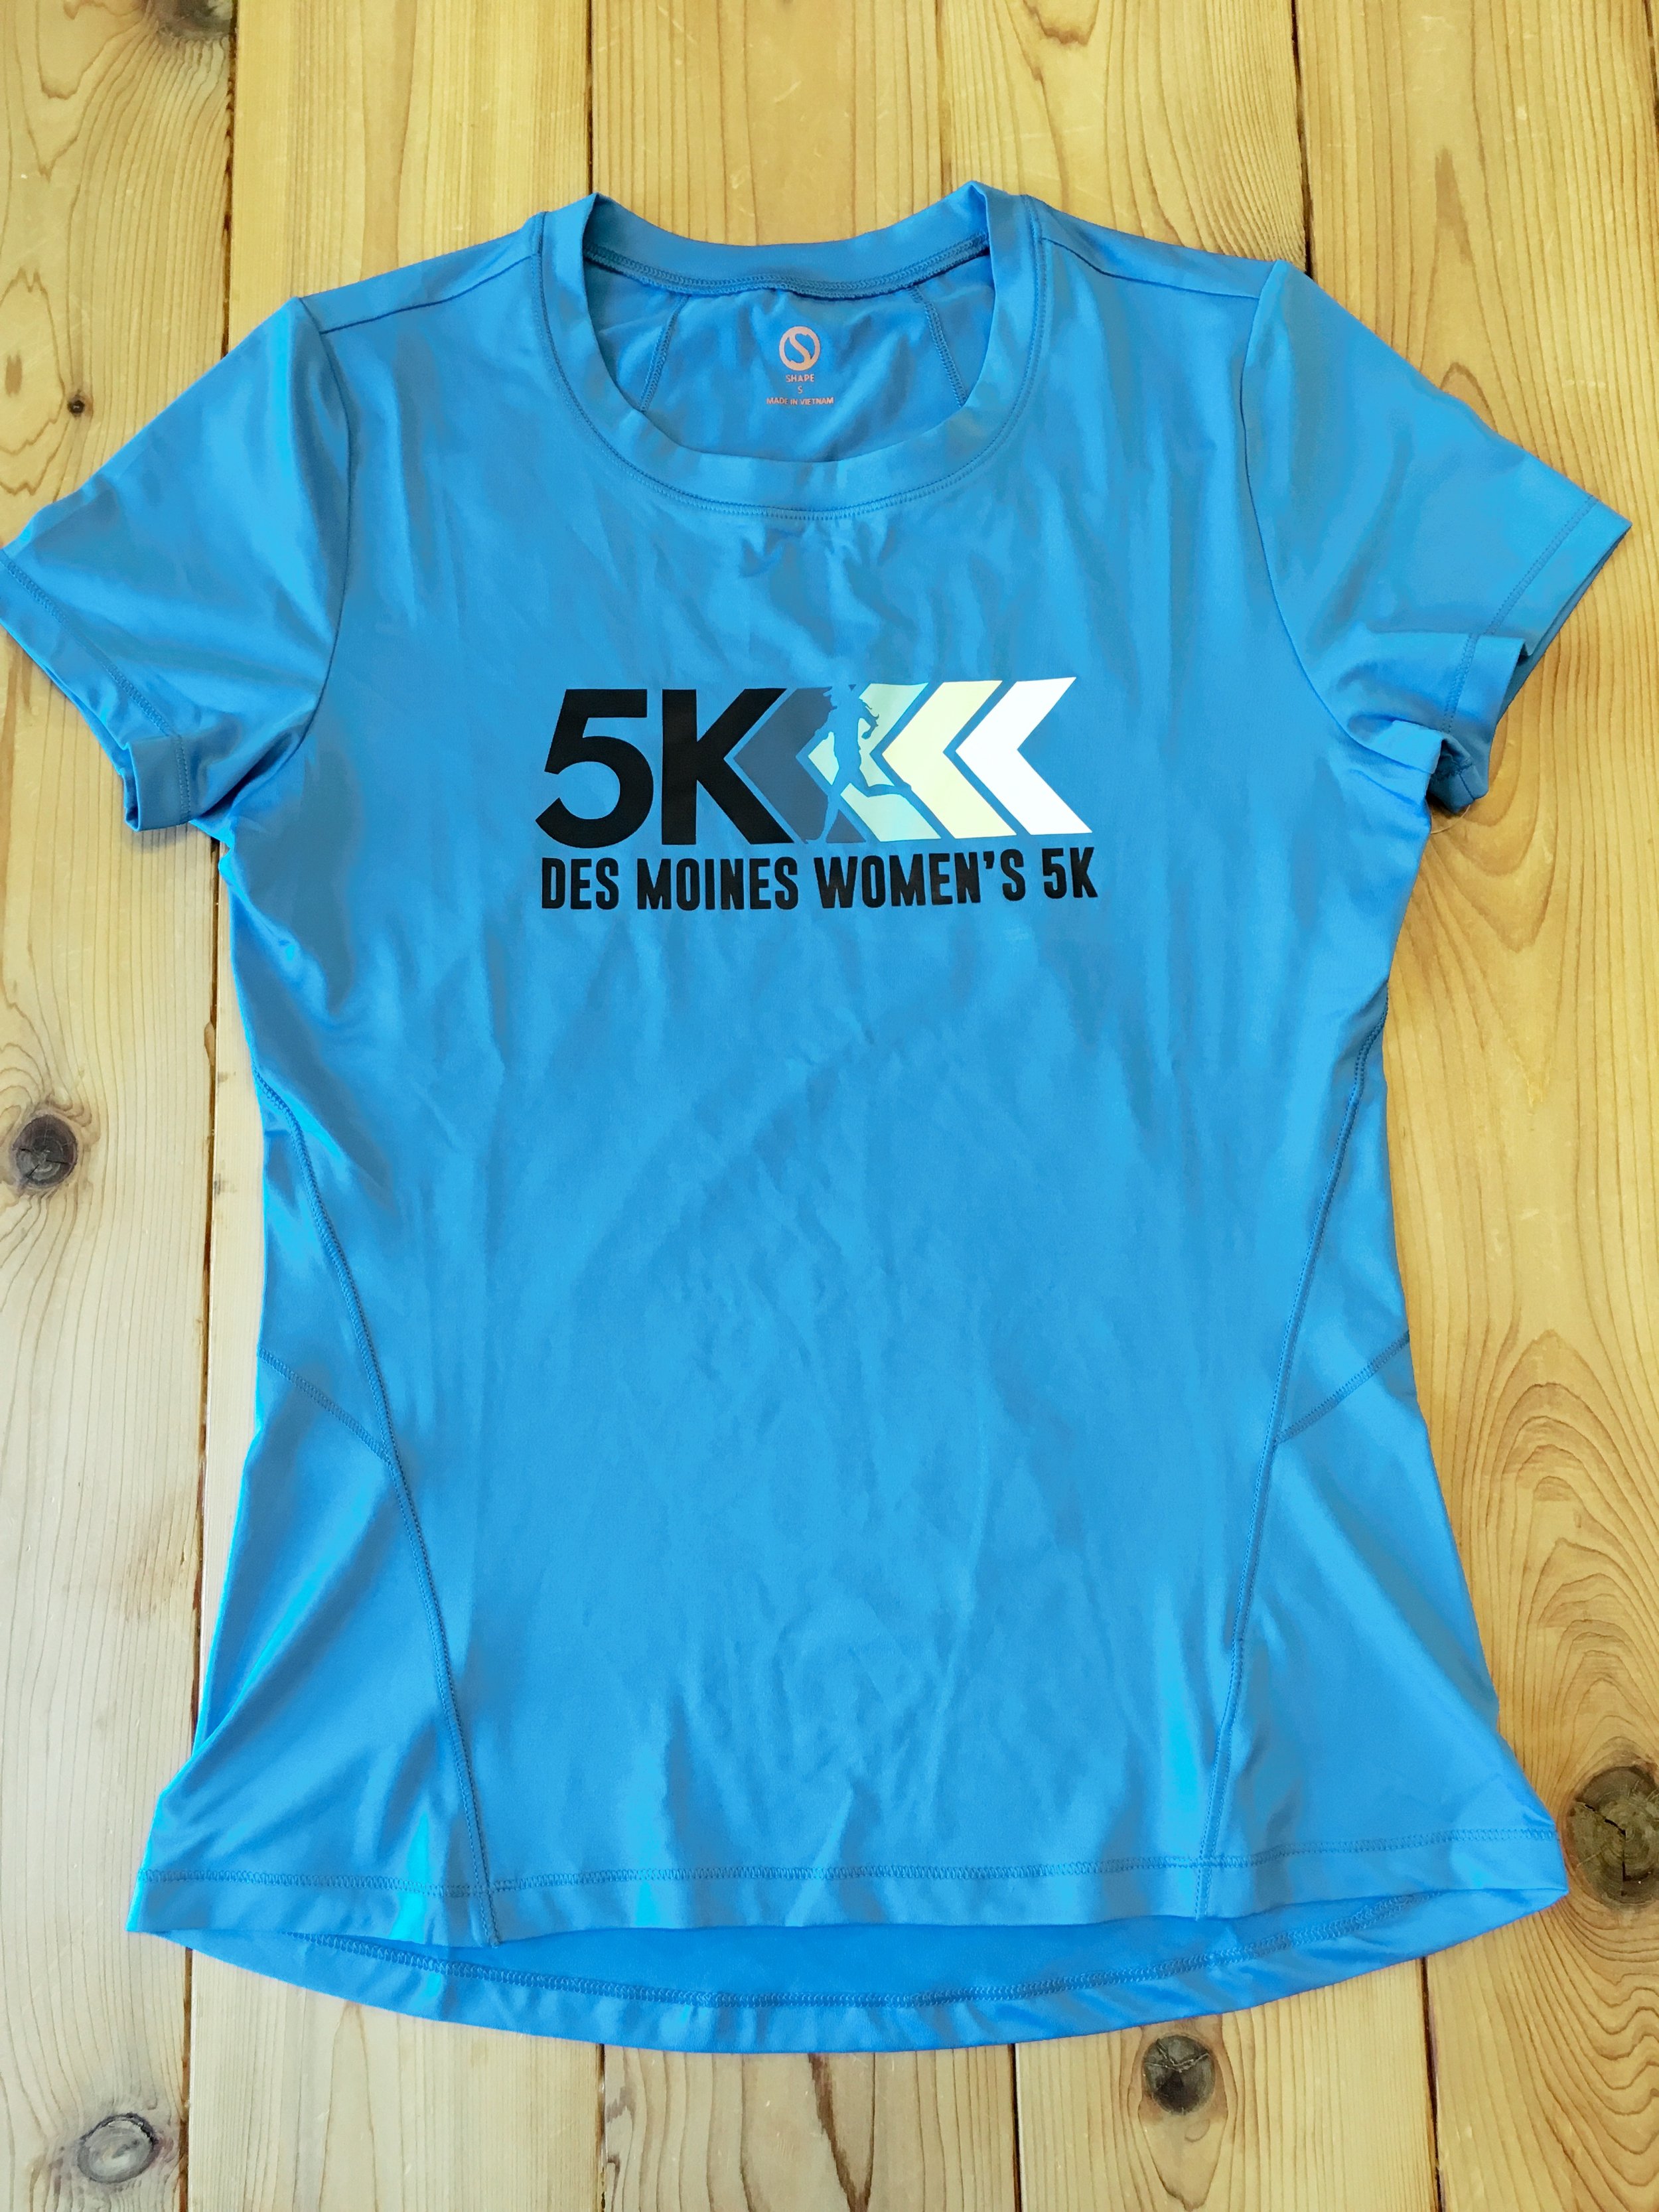 Athlete Store — The Des Moines Women's Half Marathon 5K + Team Relay